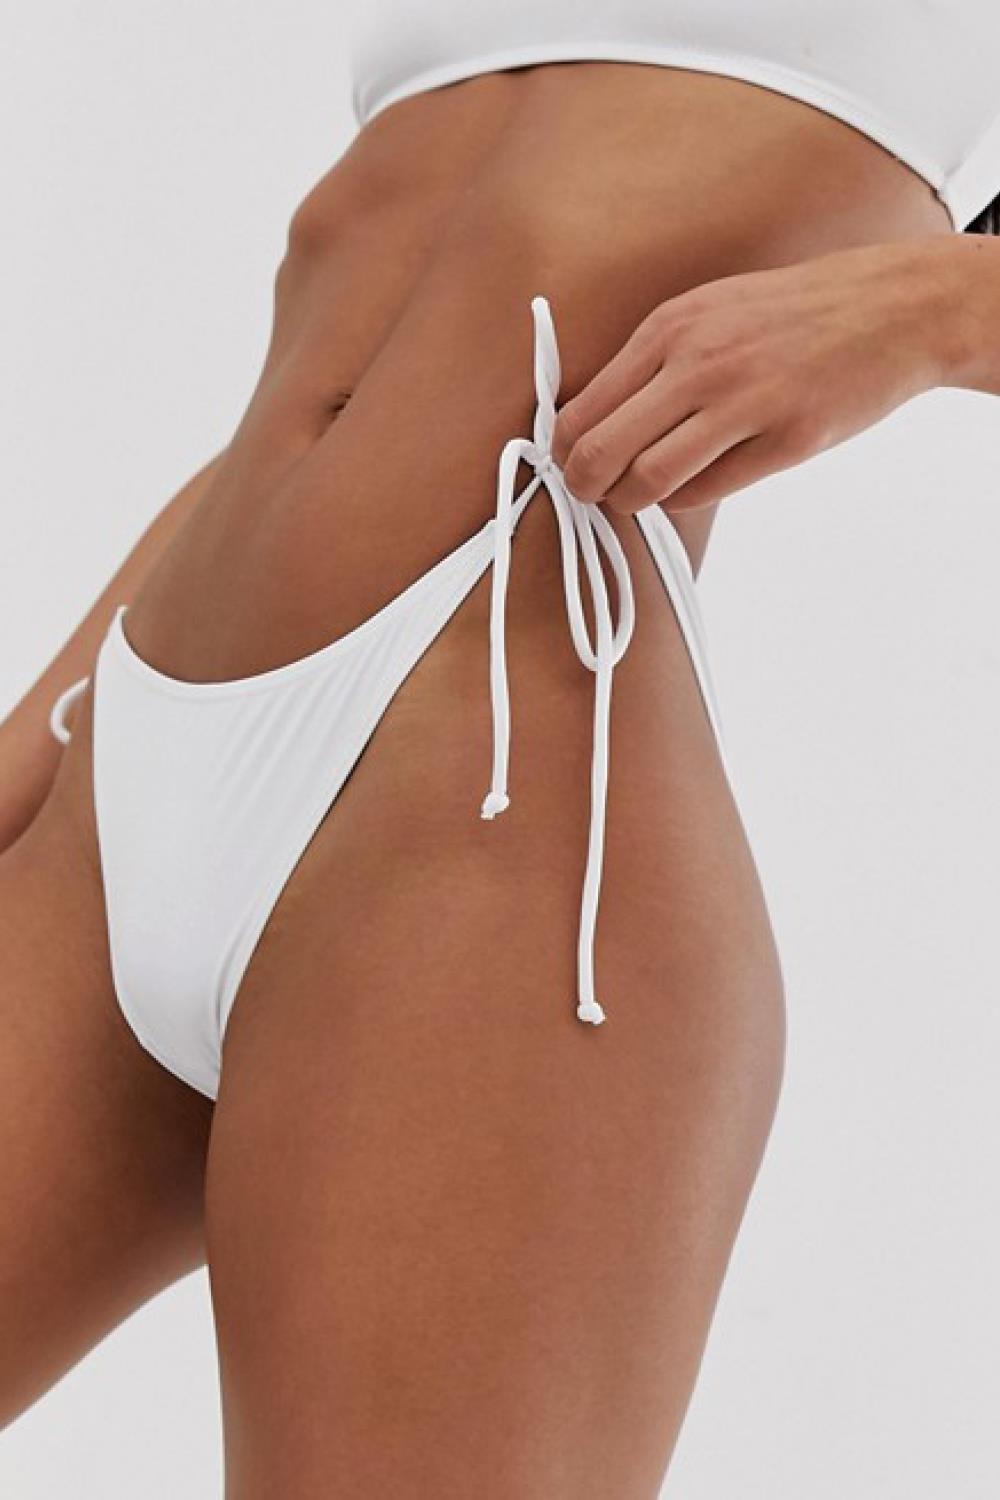 laura escanes bikini blanco asos braguitas missguided 7,49€